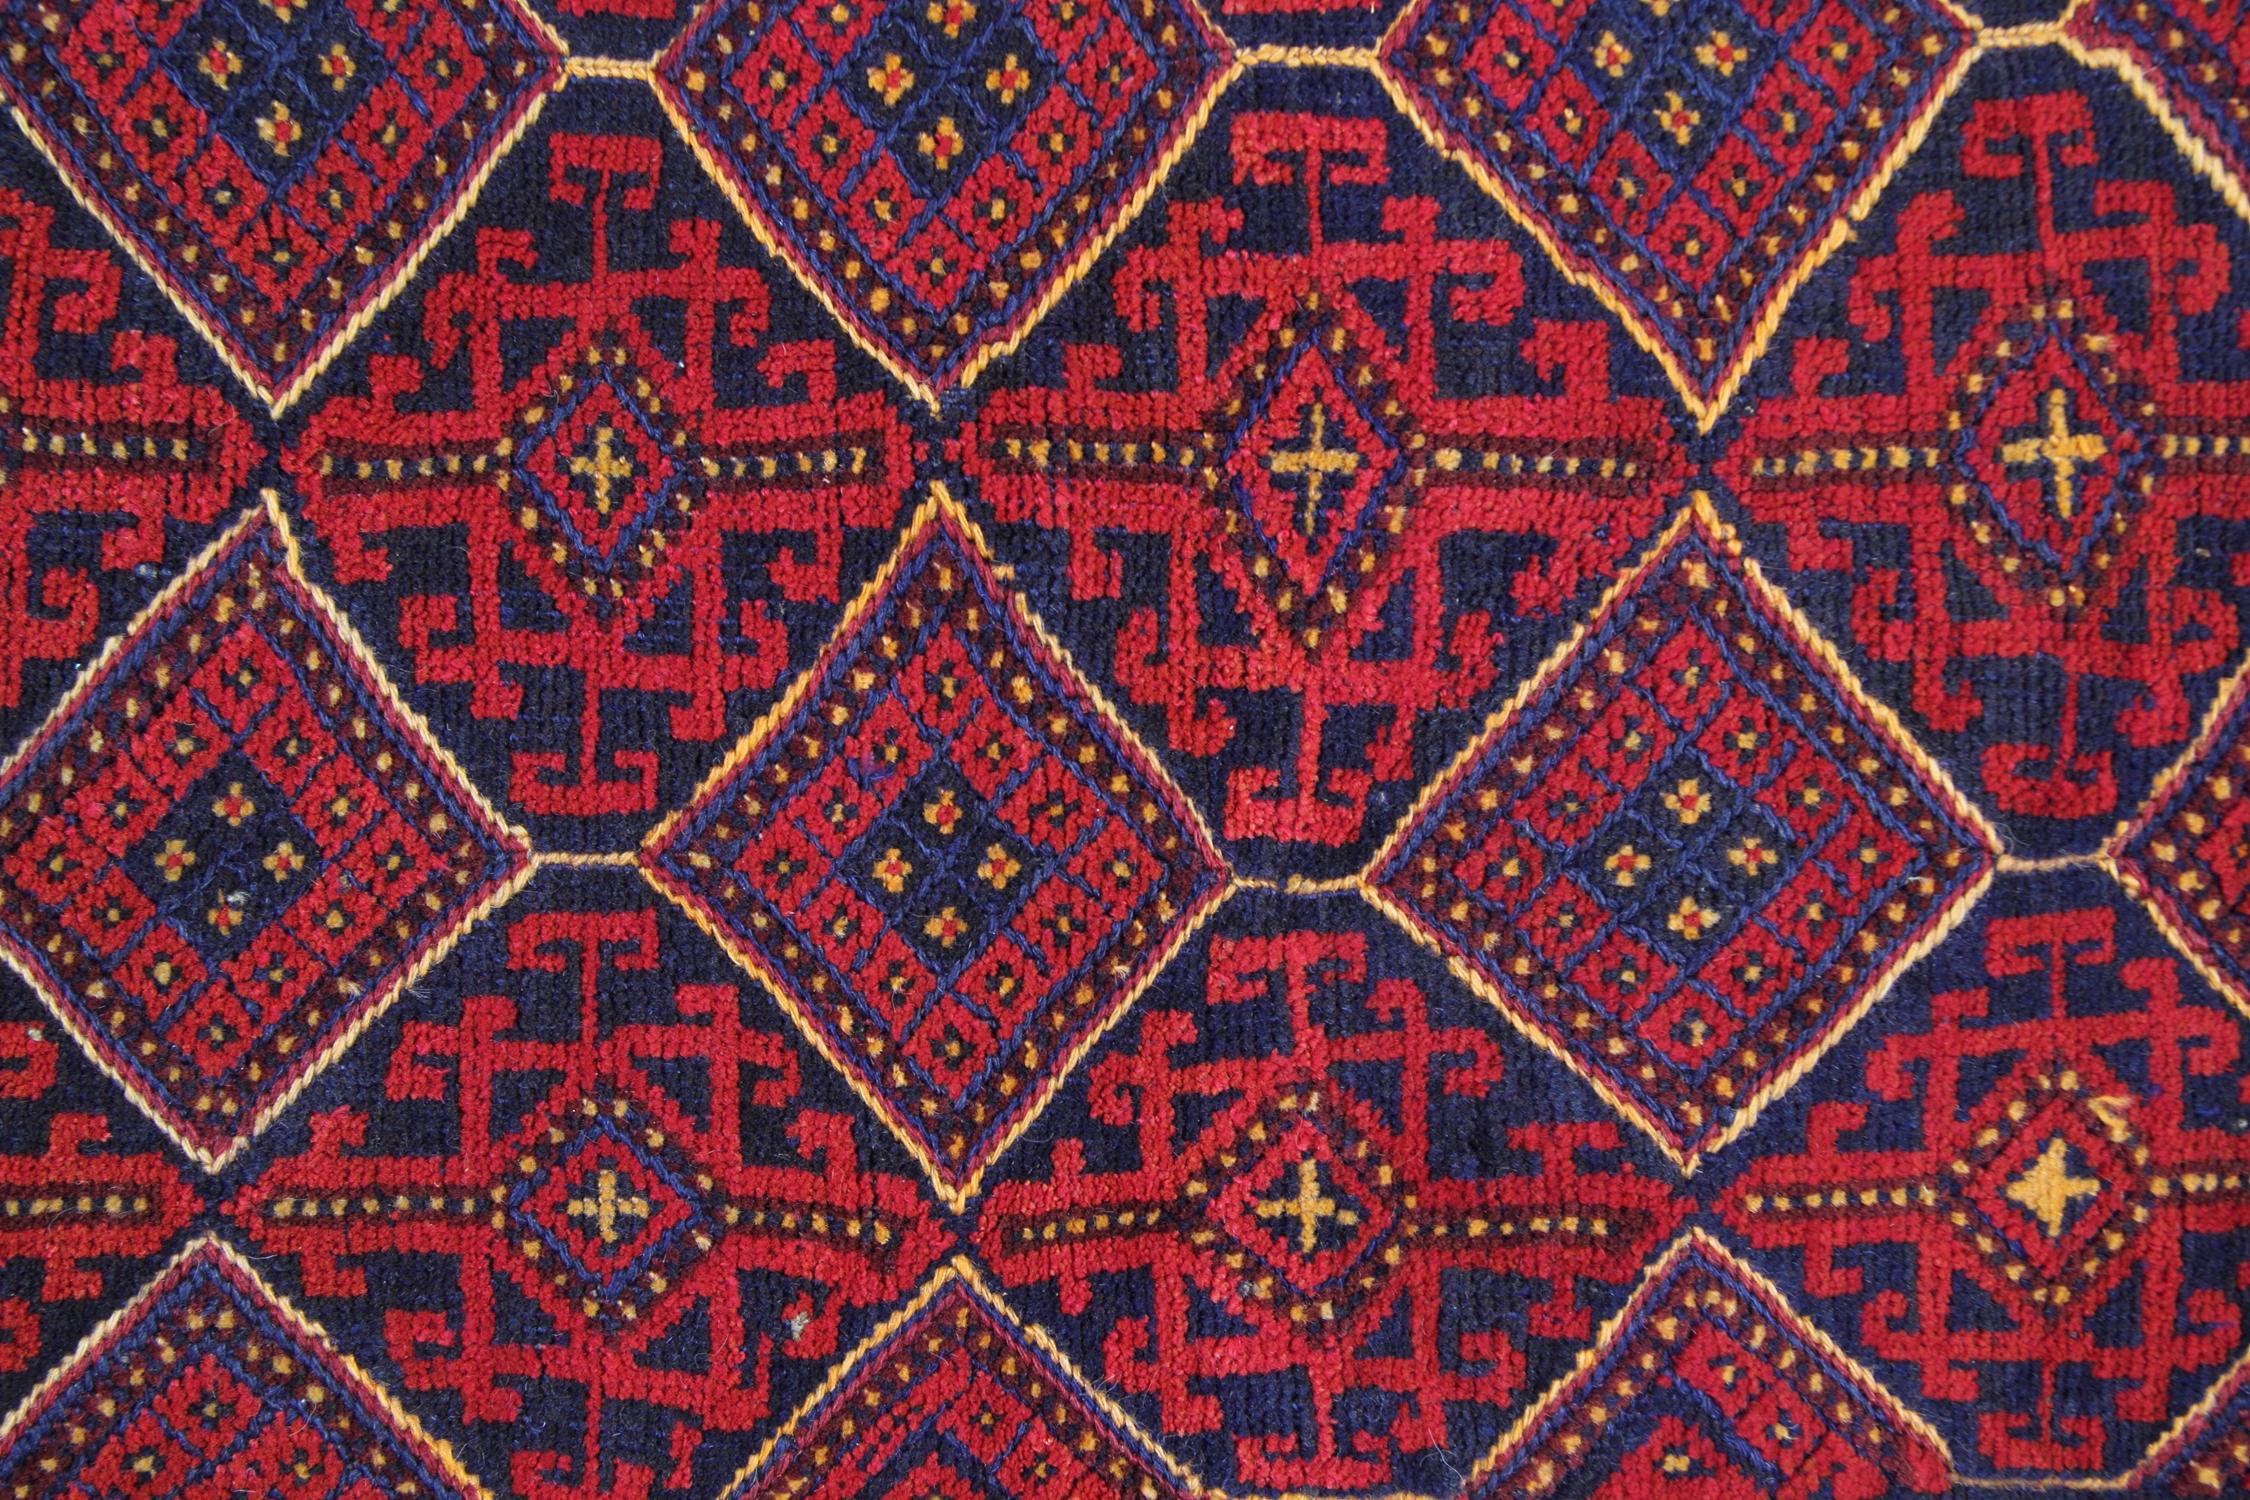 Tribal Vintage Handmade Oriental Afghan Rug Traditional Deep Red Rugs Turkmen Carpet